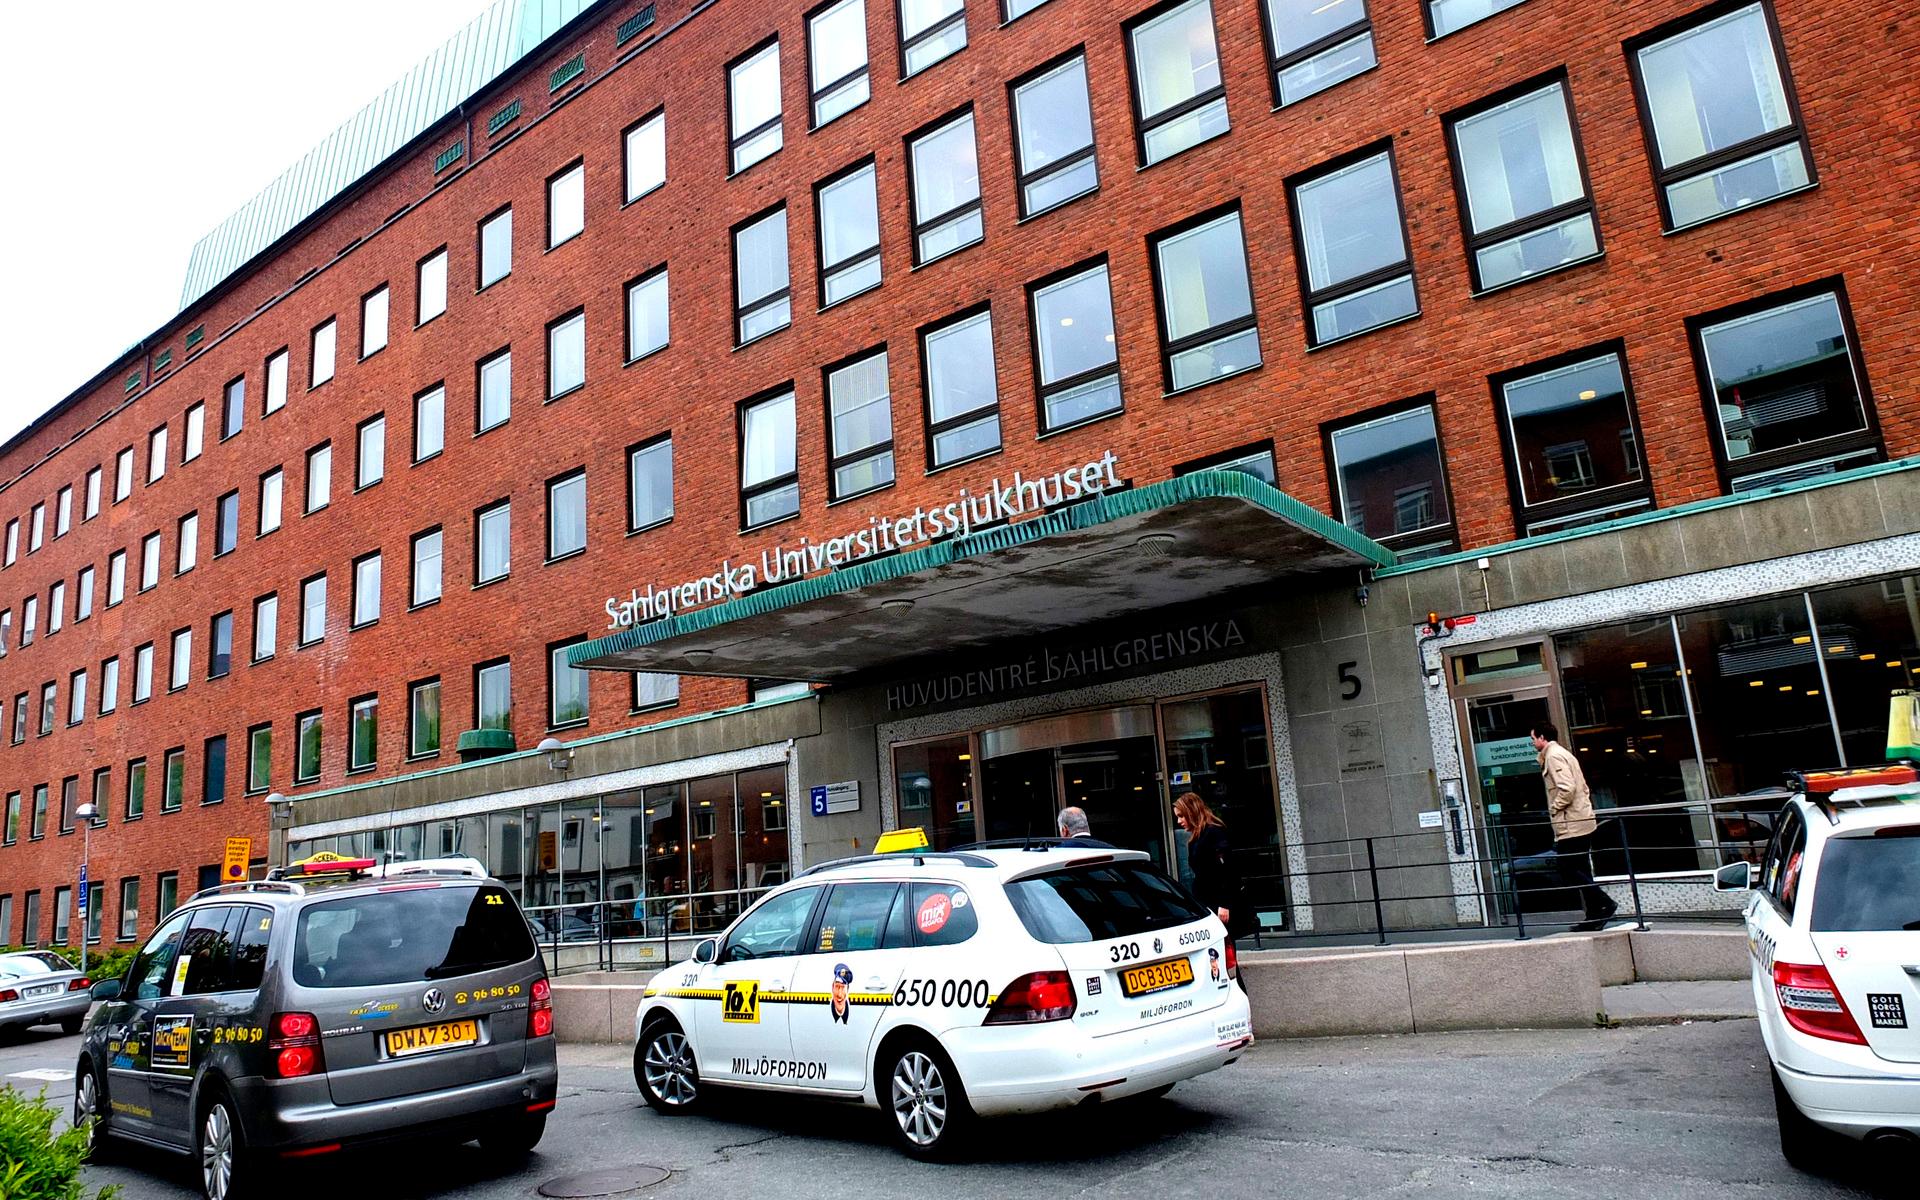 Sahlgrenska Universitetssjukhuset är Sveriges största sjukhus och ett av de större universitetssjukhusen i Europa.